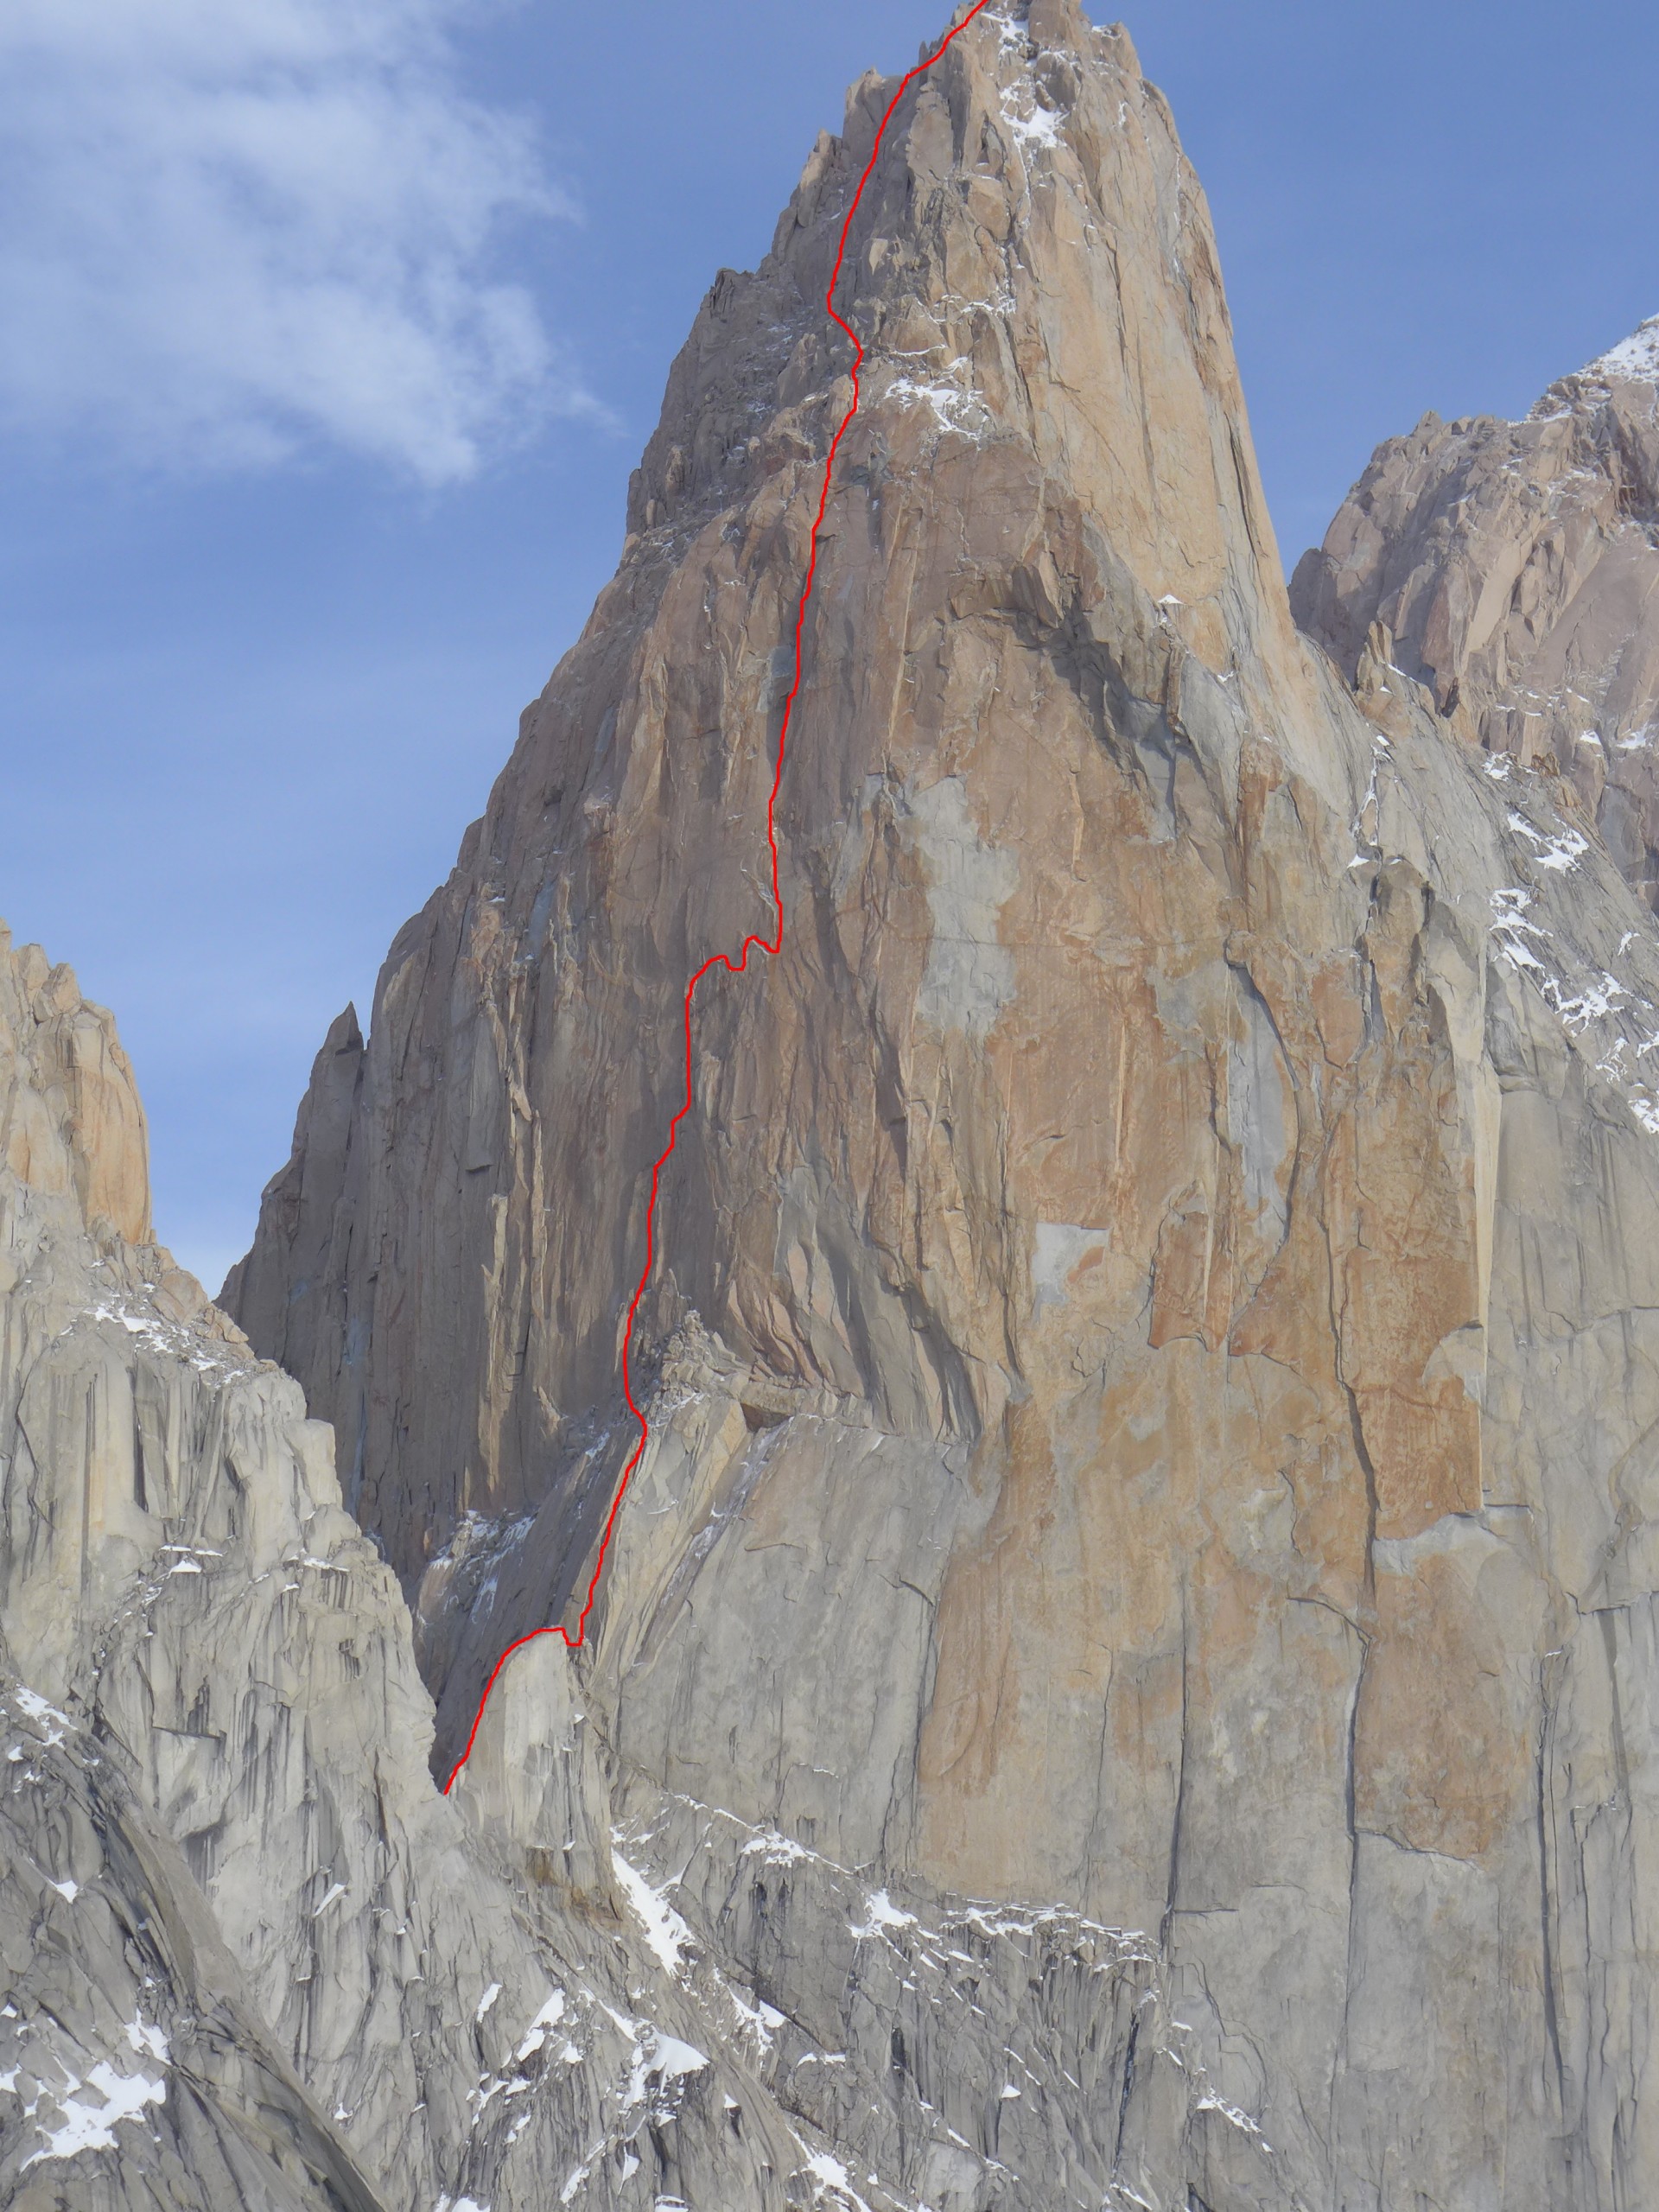 Vris prvenstvene smeri Luke Krajnca in Luke Lindiča Pot - 6c, A3, 750 m (500 m nove smeri) - v južni steni Poincenota v Patagoniji